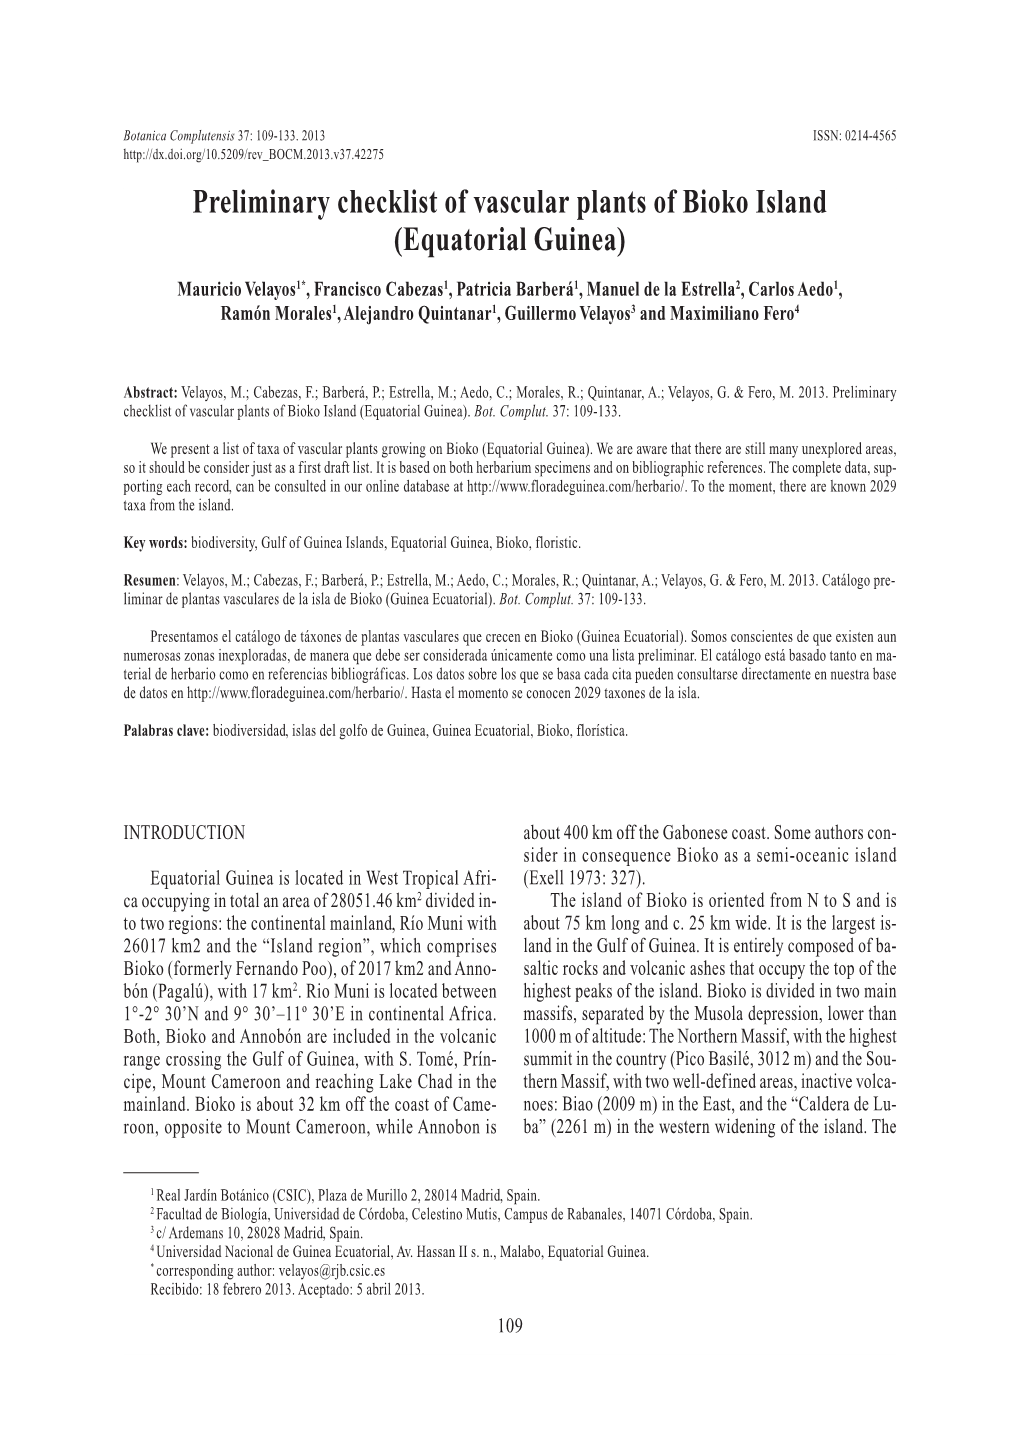 Preliminary Checklist of Vascular Plants of Bioko Island (Equatorial Guinea)